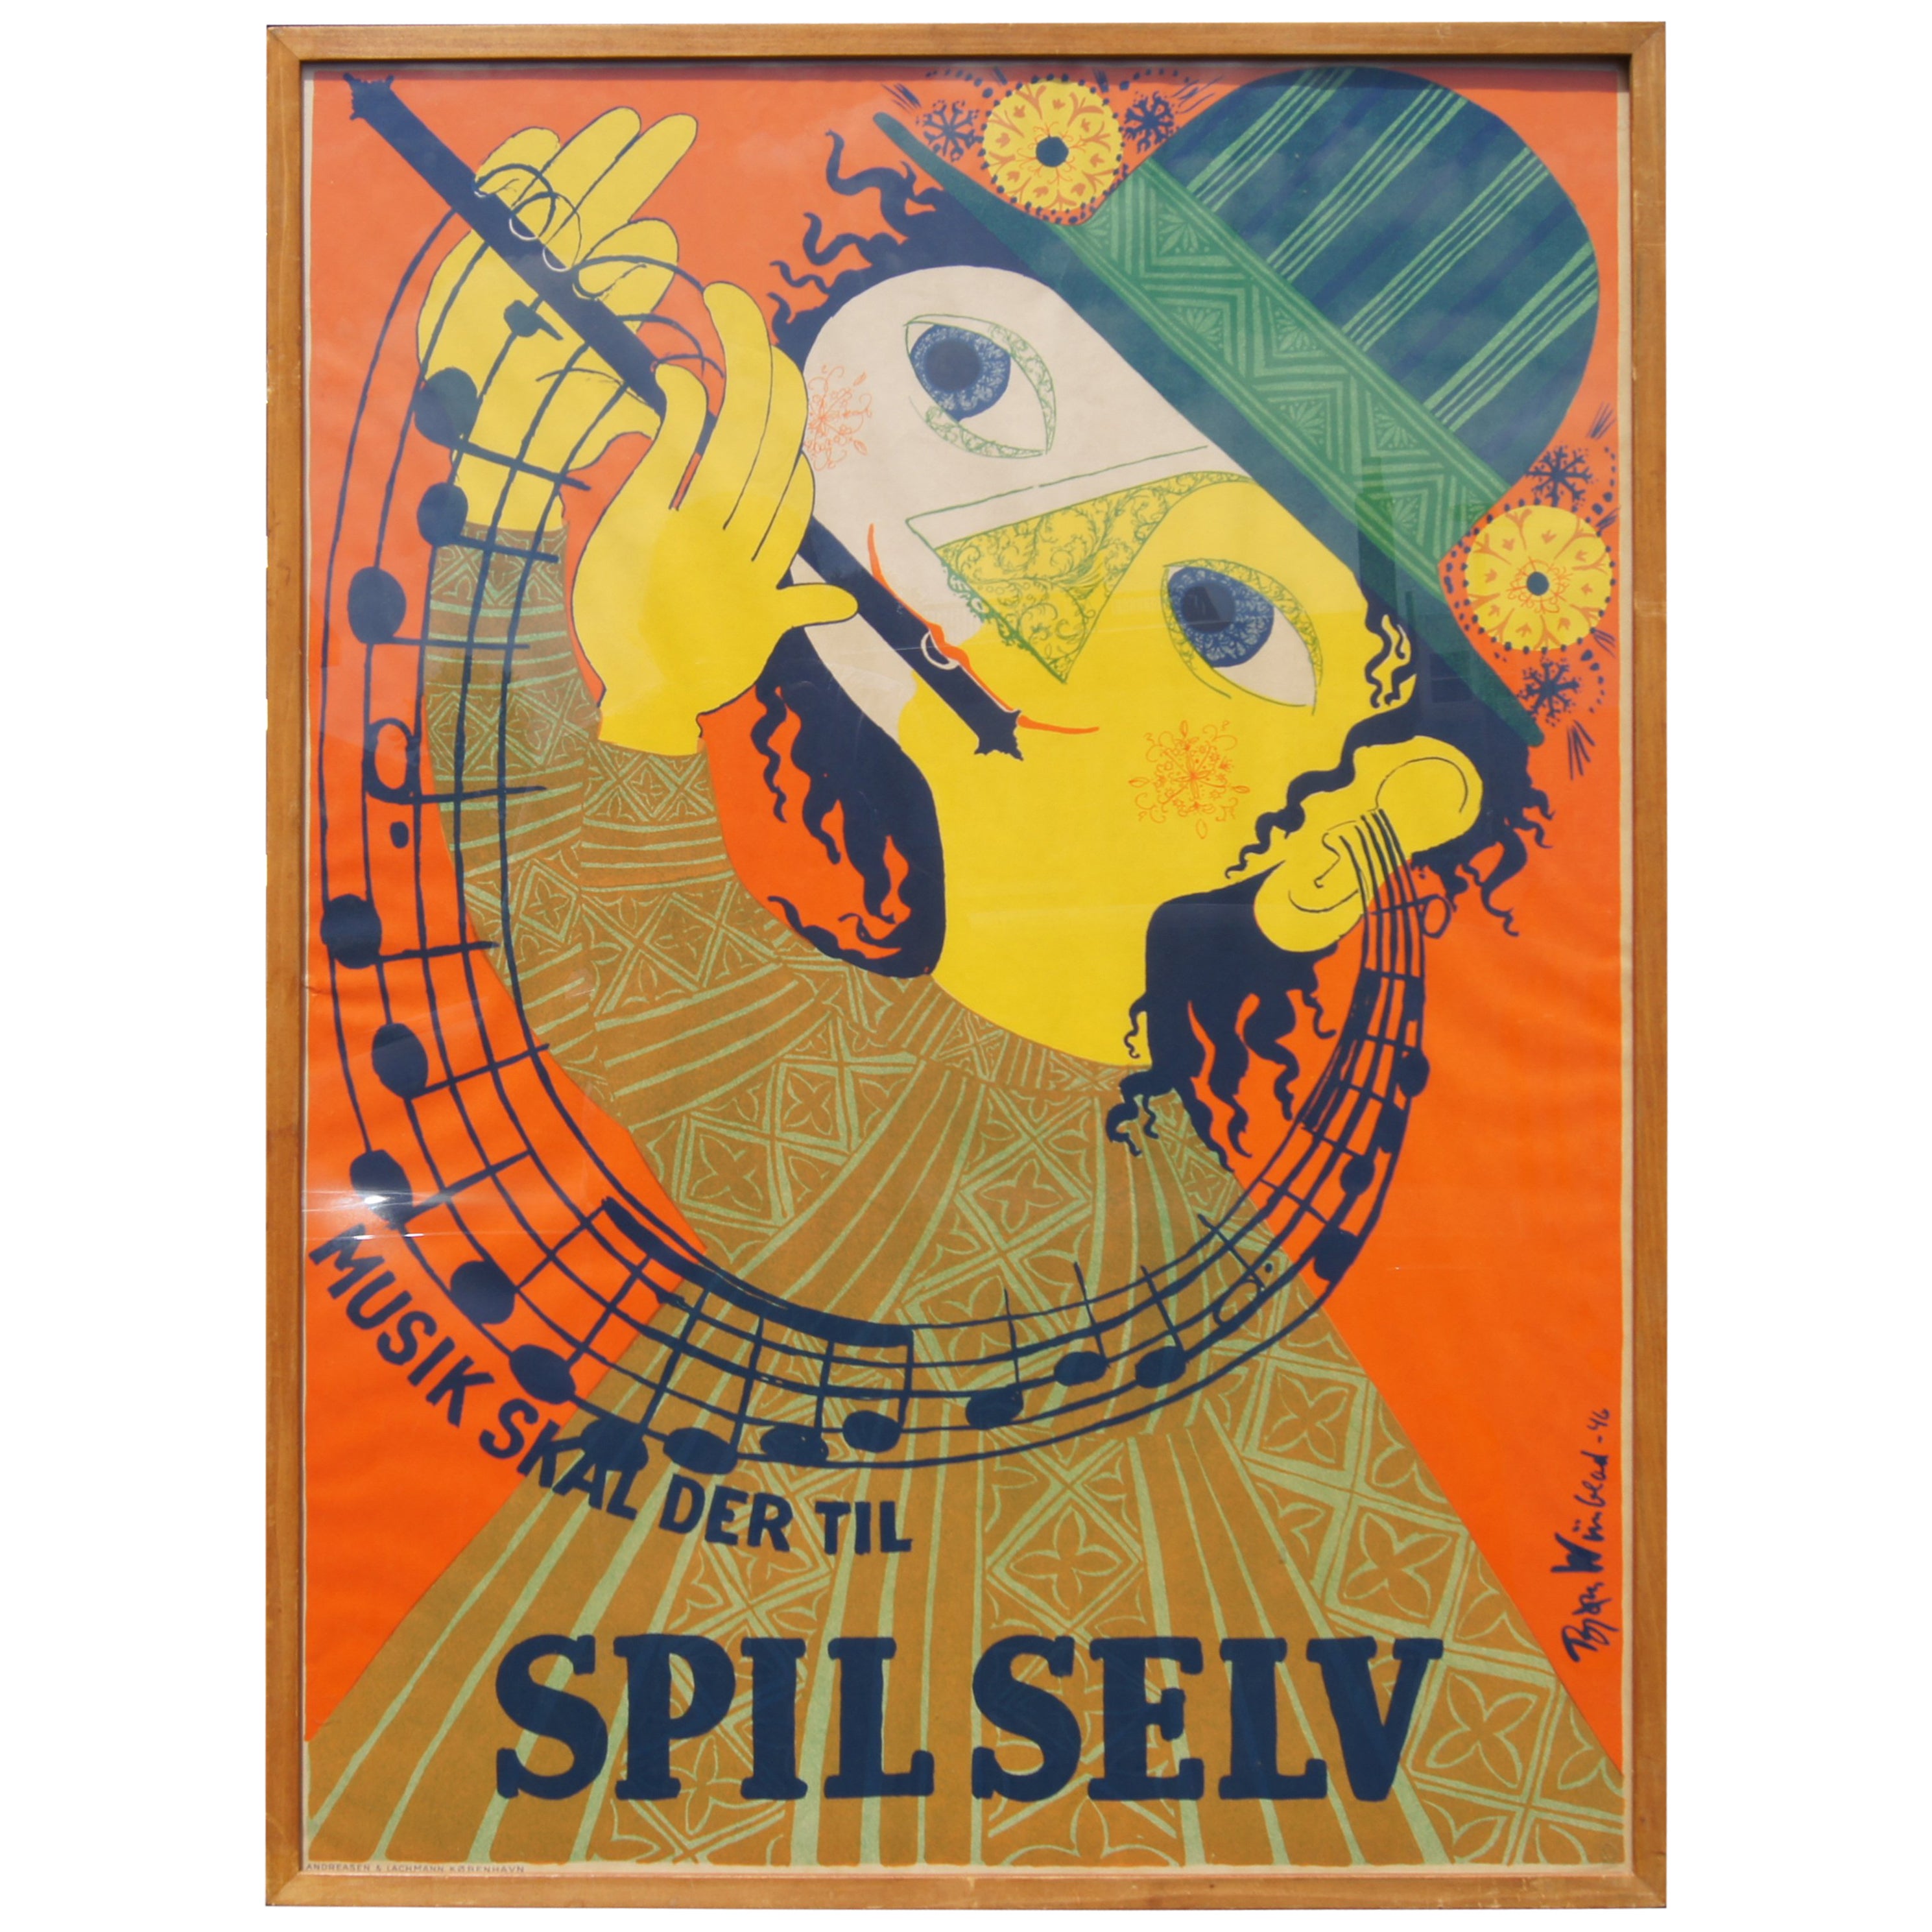 Bjørn Wiinblad, Spil Sev, Silkscreen Poster, 1946 at 1stDibs